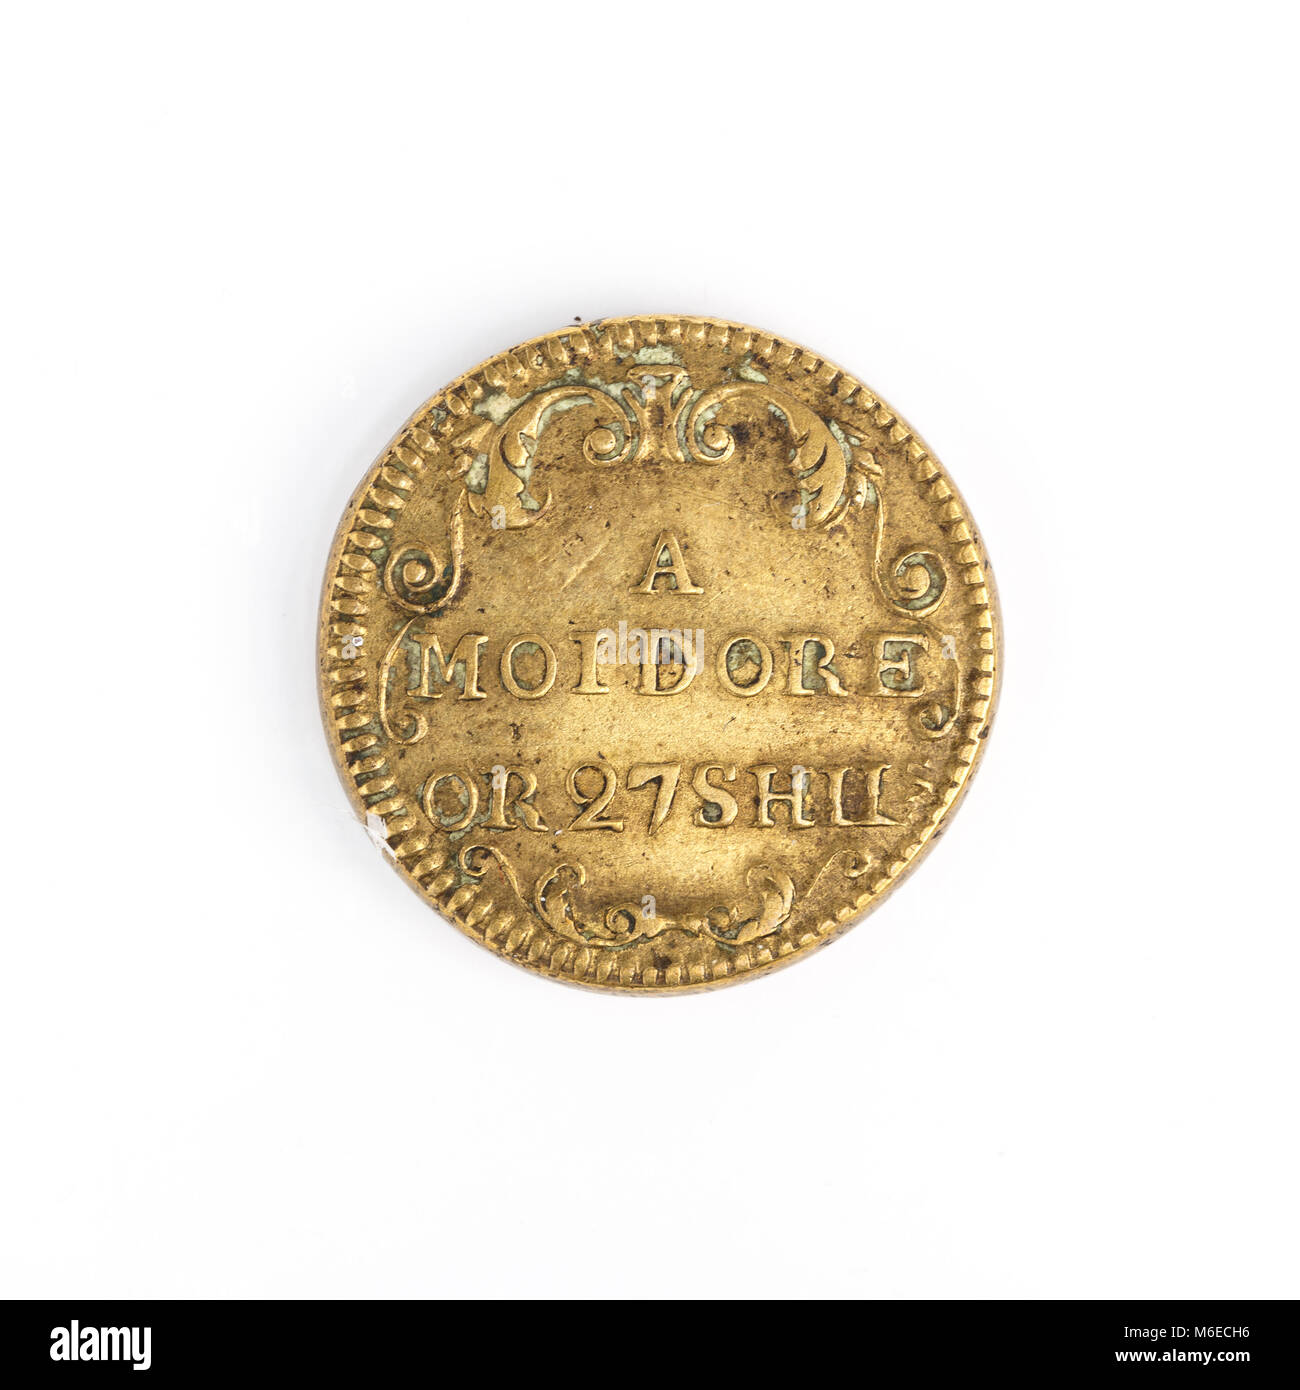 Un Moidore o 27 Shils (chelines), peso de moneda emitida durante el reinado de George ll. Moidore portugués fue una moneda en circulación en el Reino Unido en el momento. Foto de stock